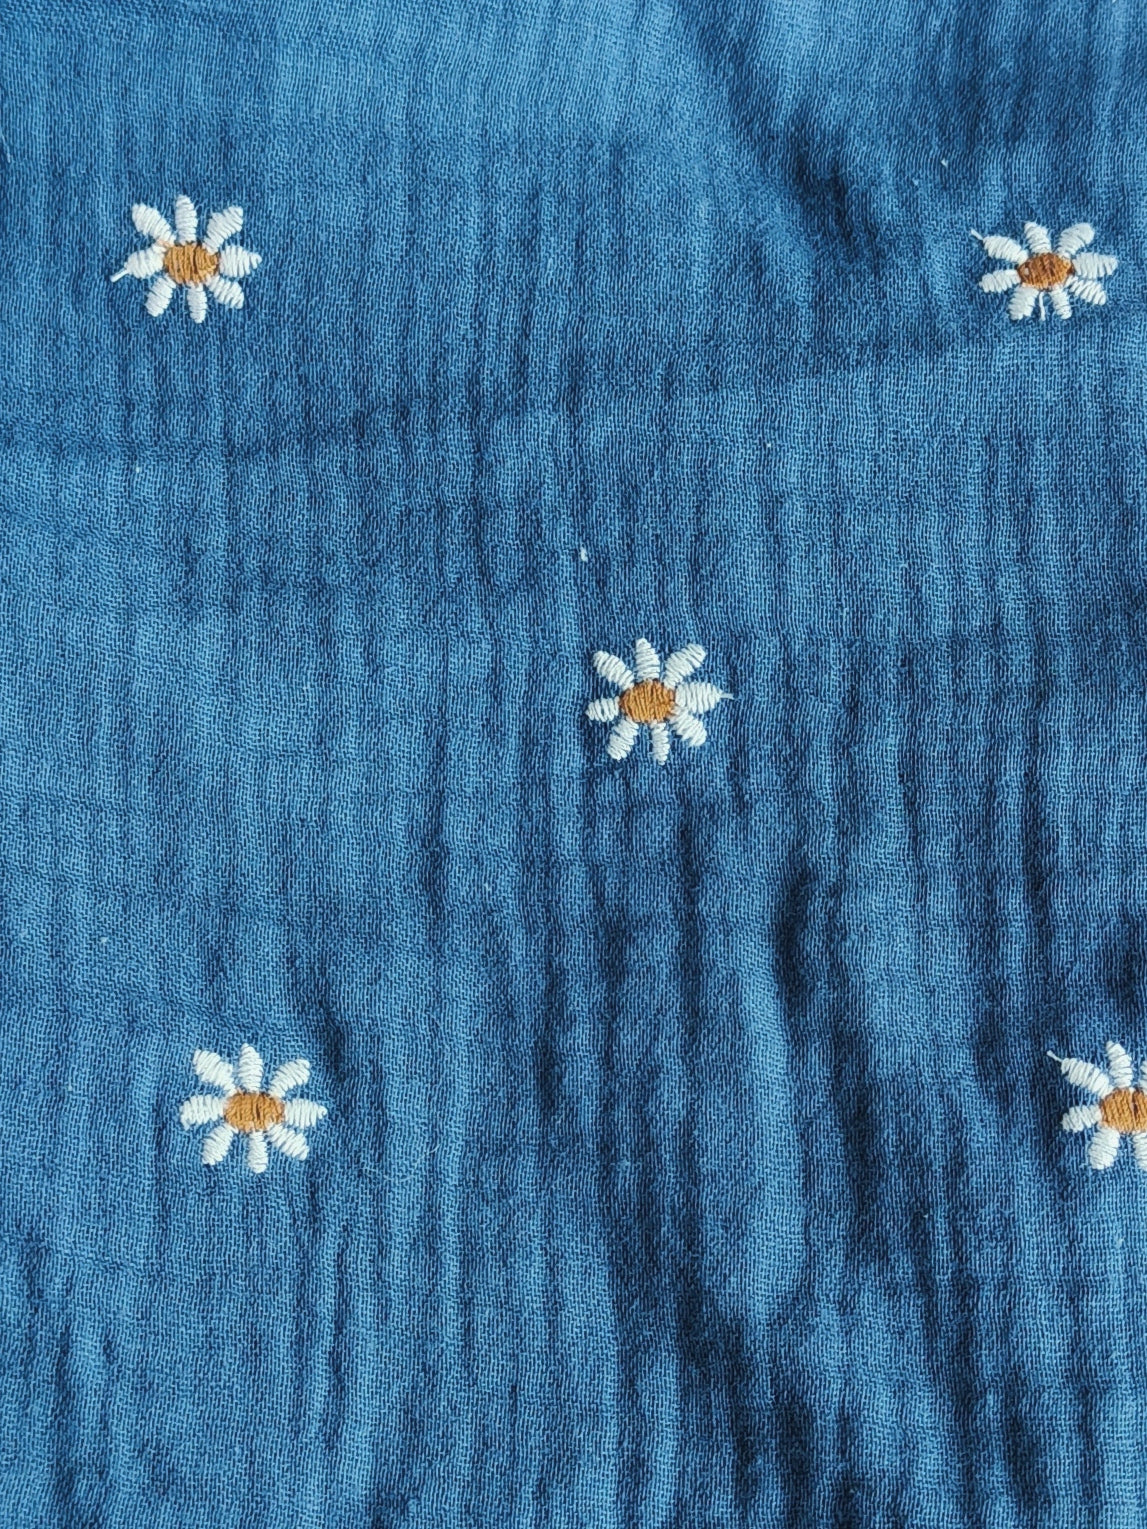 Breastfeeding cloth hydrophilic | Blue daisies